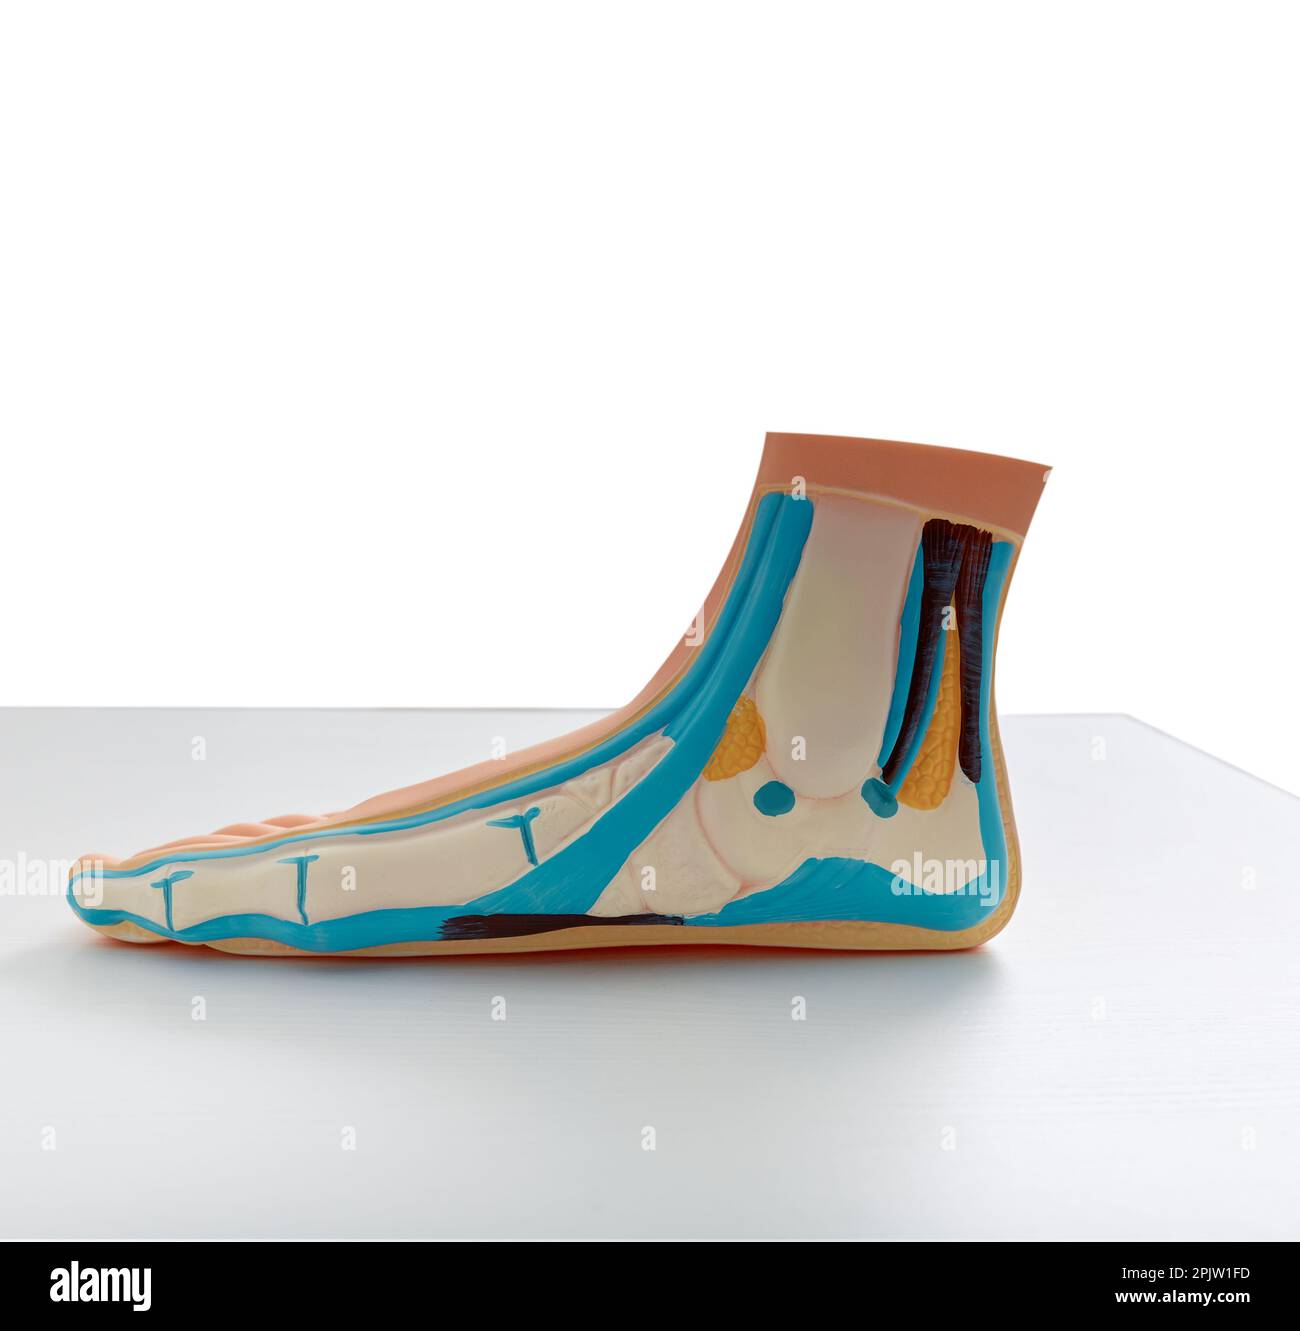 Pied plat. Modèle anatomique ou éducatif de pied avec pieds plats debout sur la table Banque D'Images